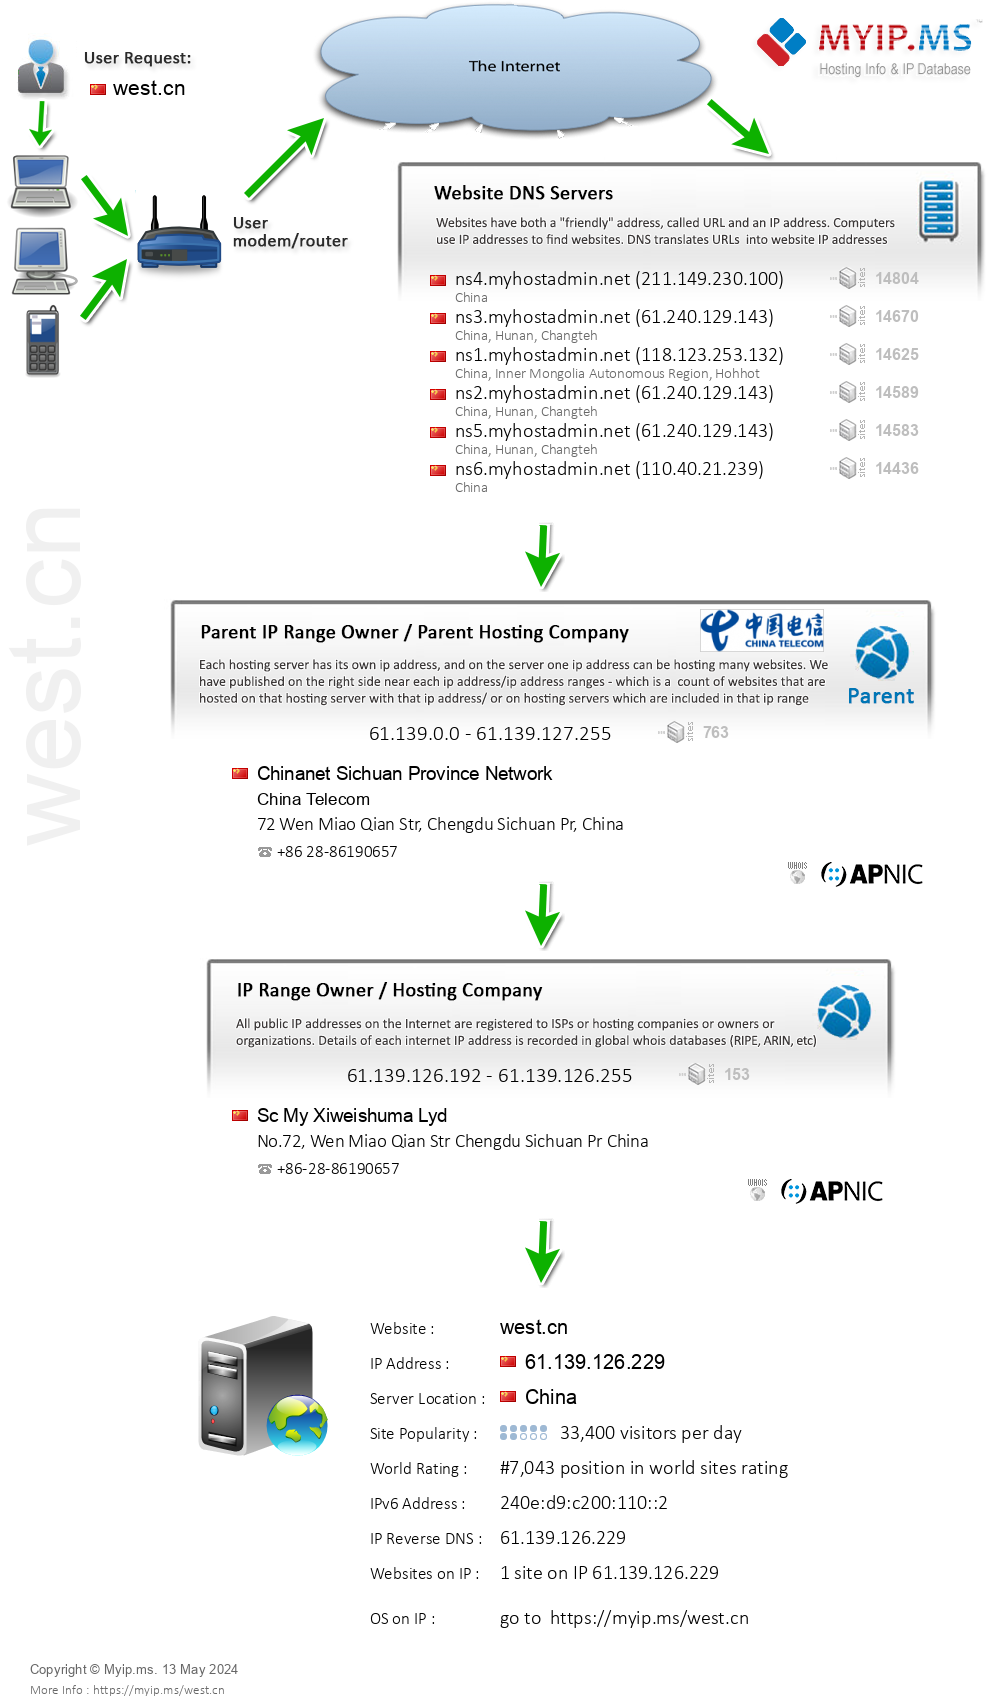 West.cn - Website Hosting Visual IP Diagram